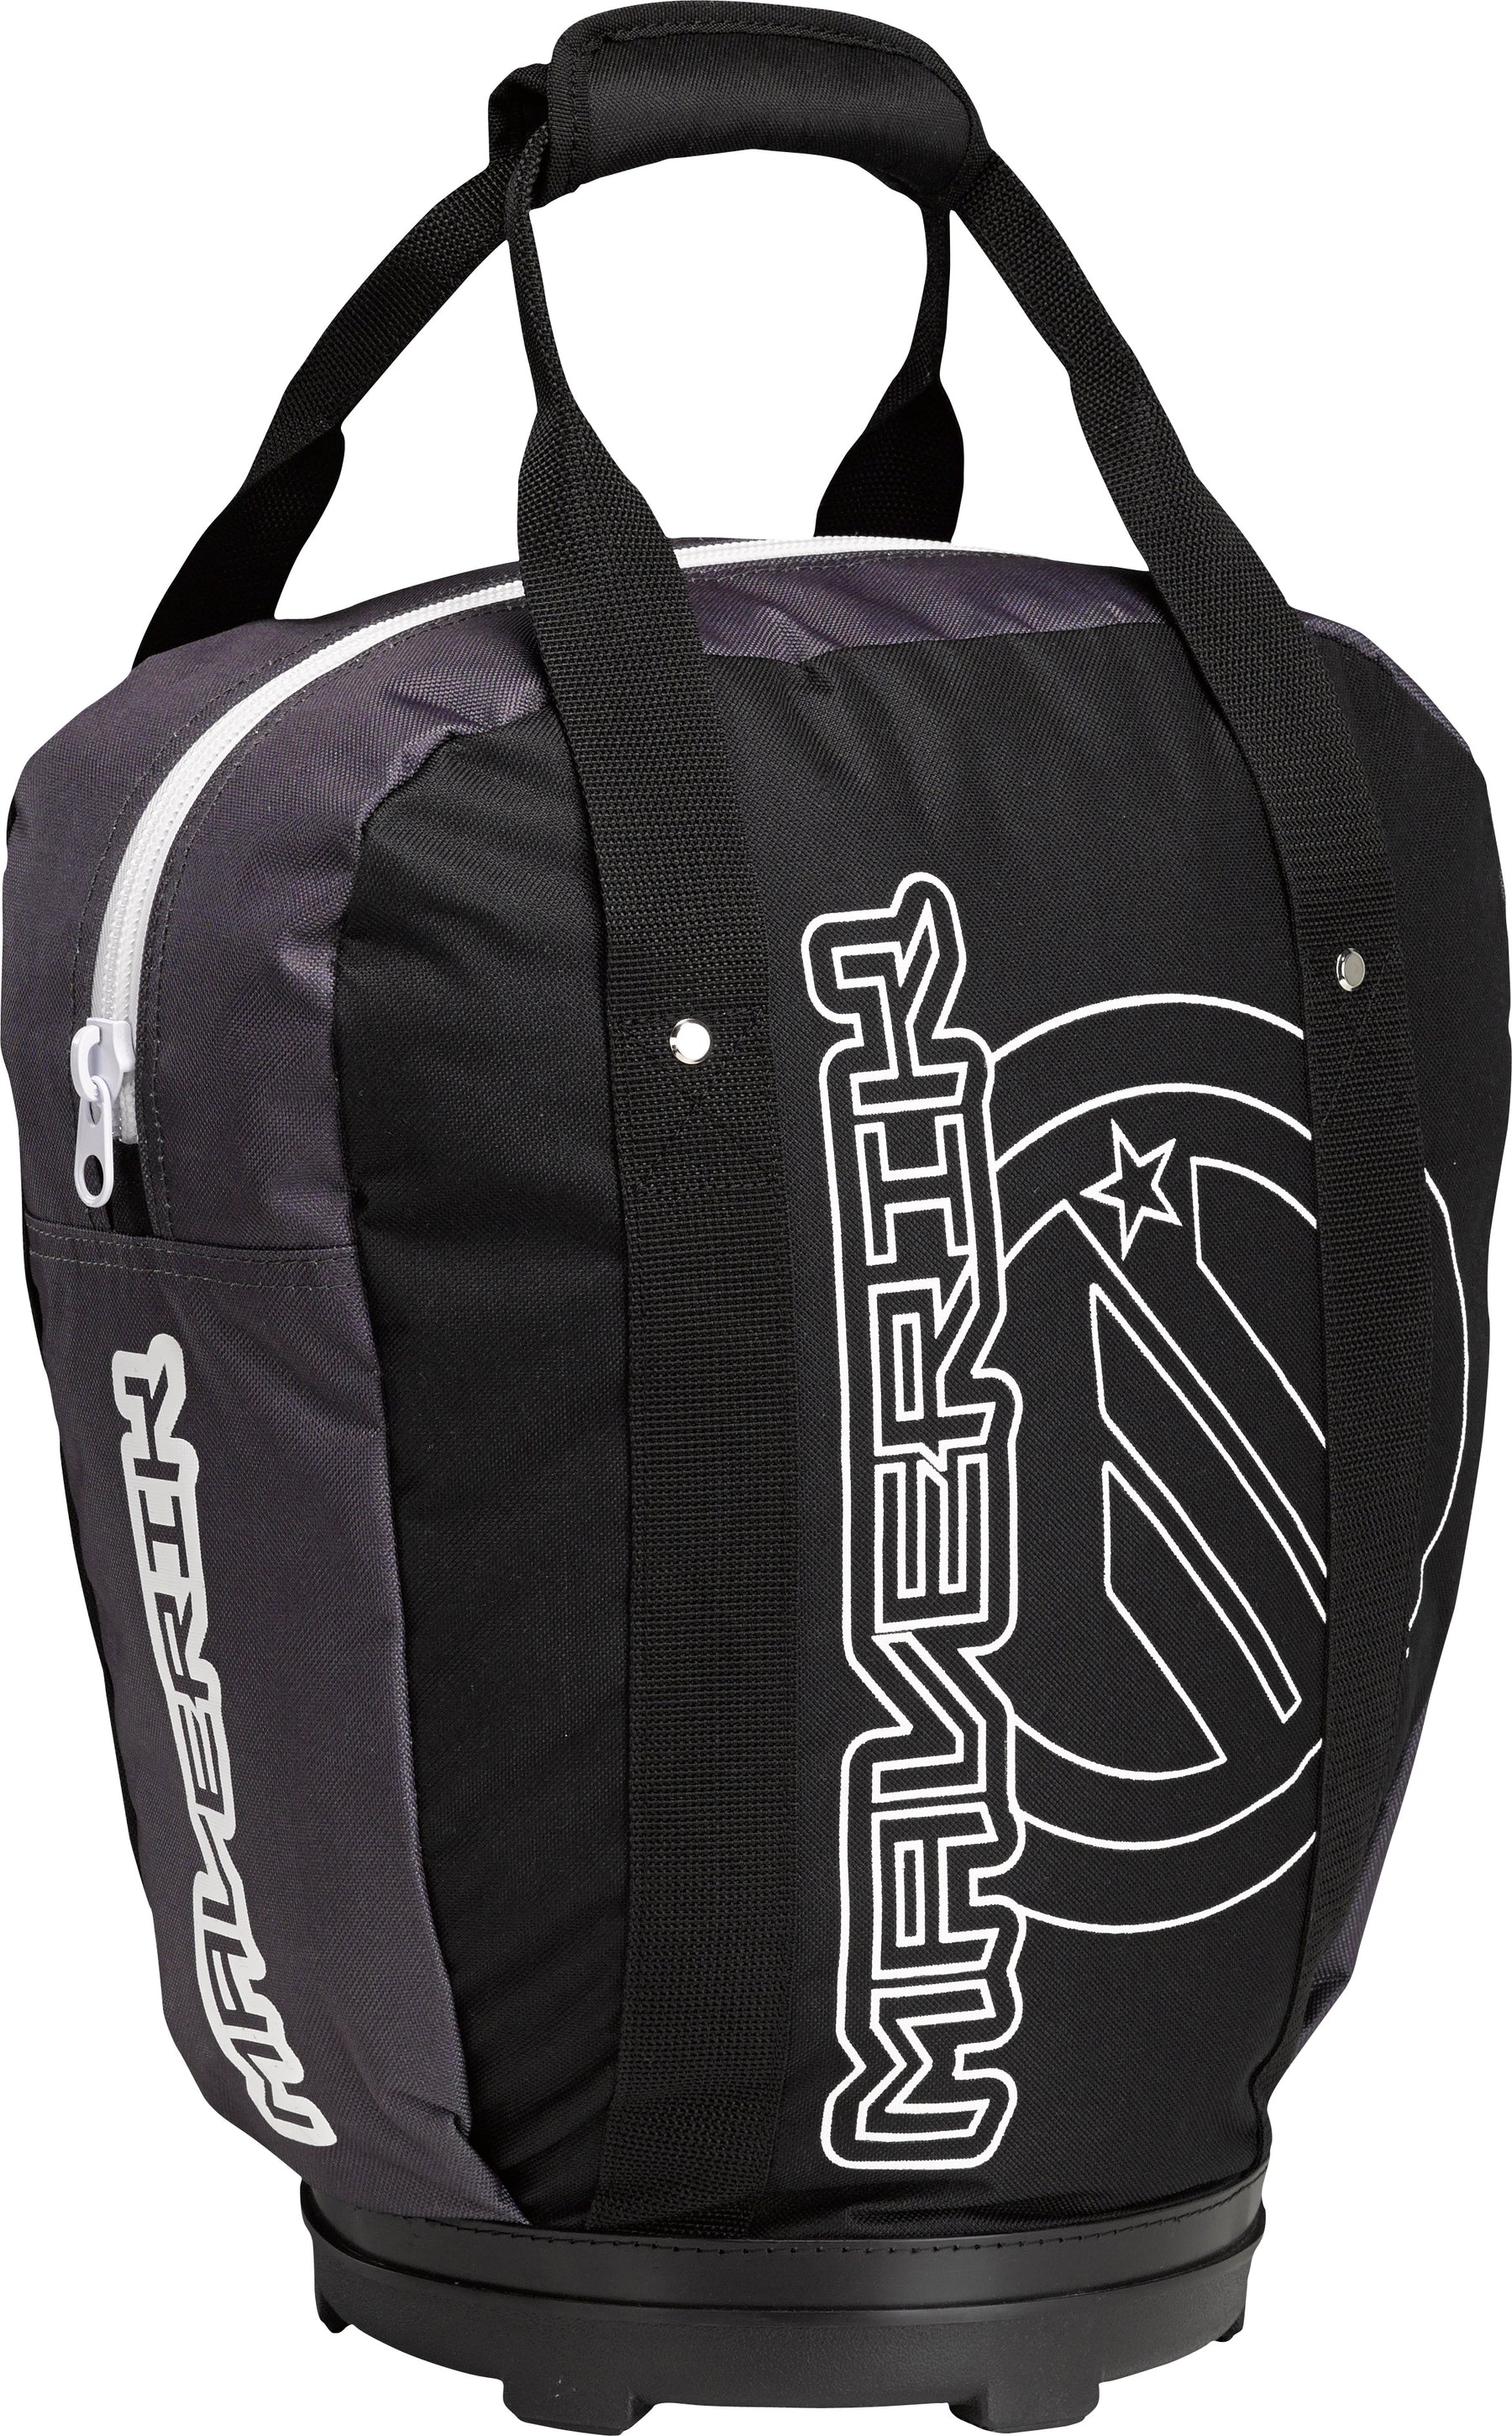 Maverik Speed Lacrosse Bag